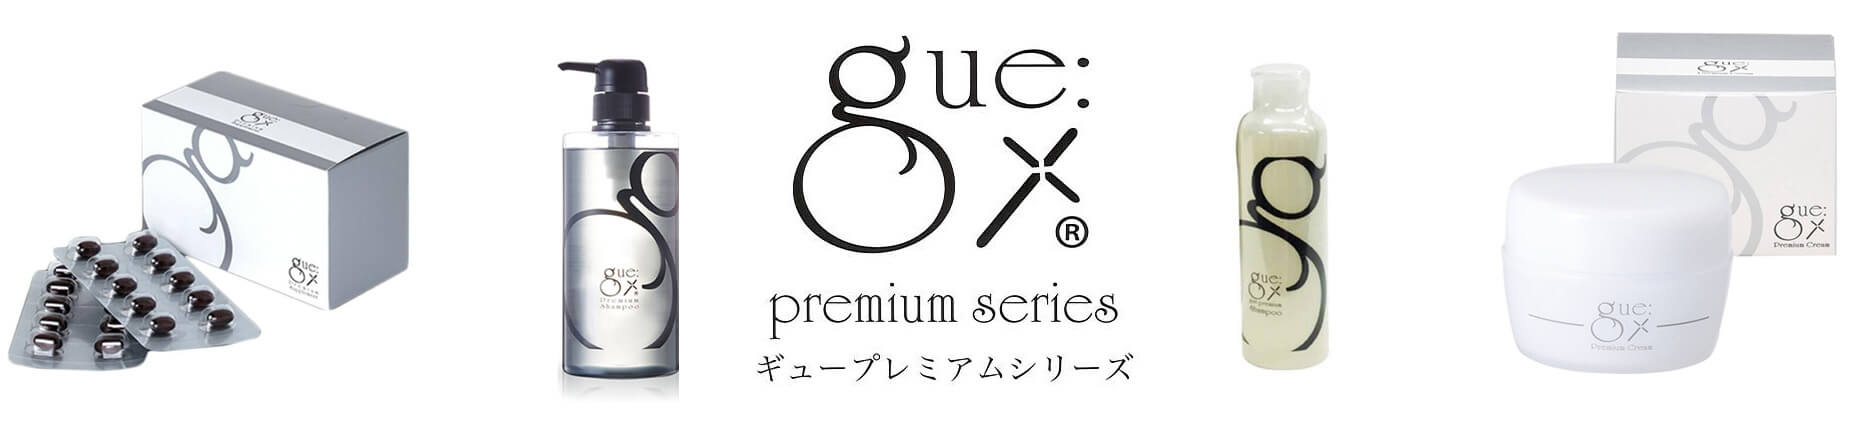 gue premium series ギュープレミアムシリーズ